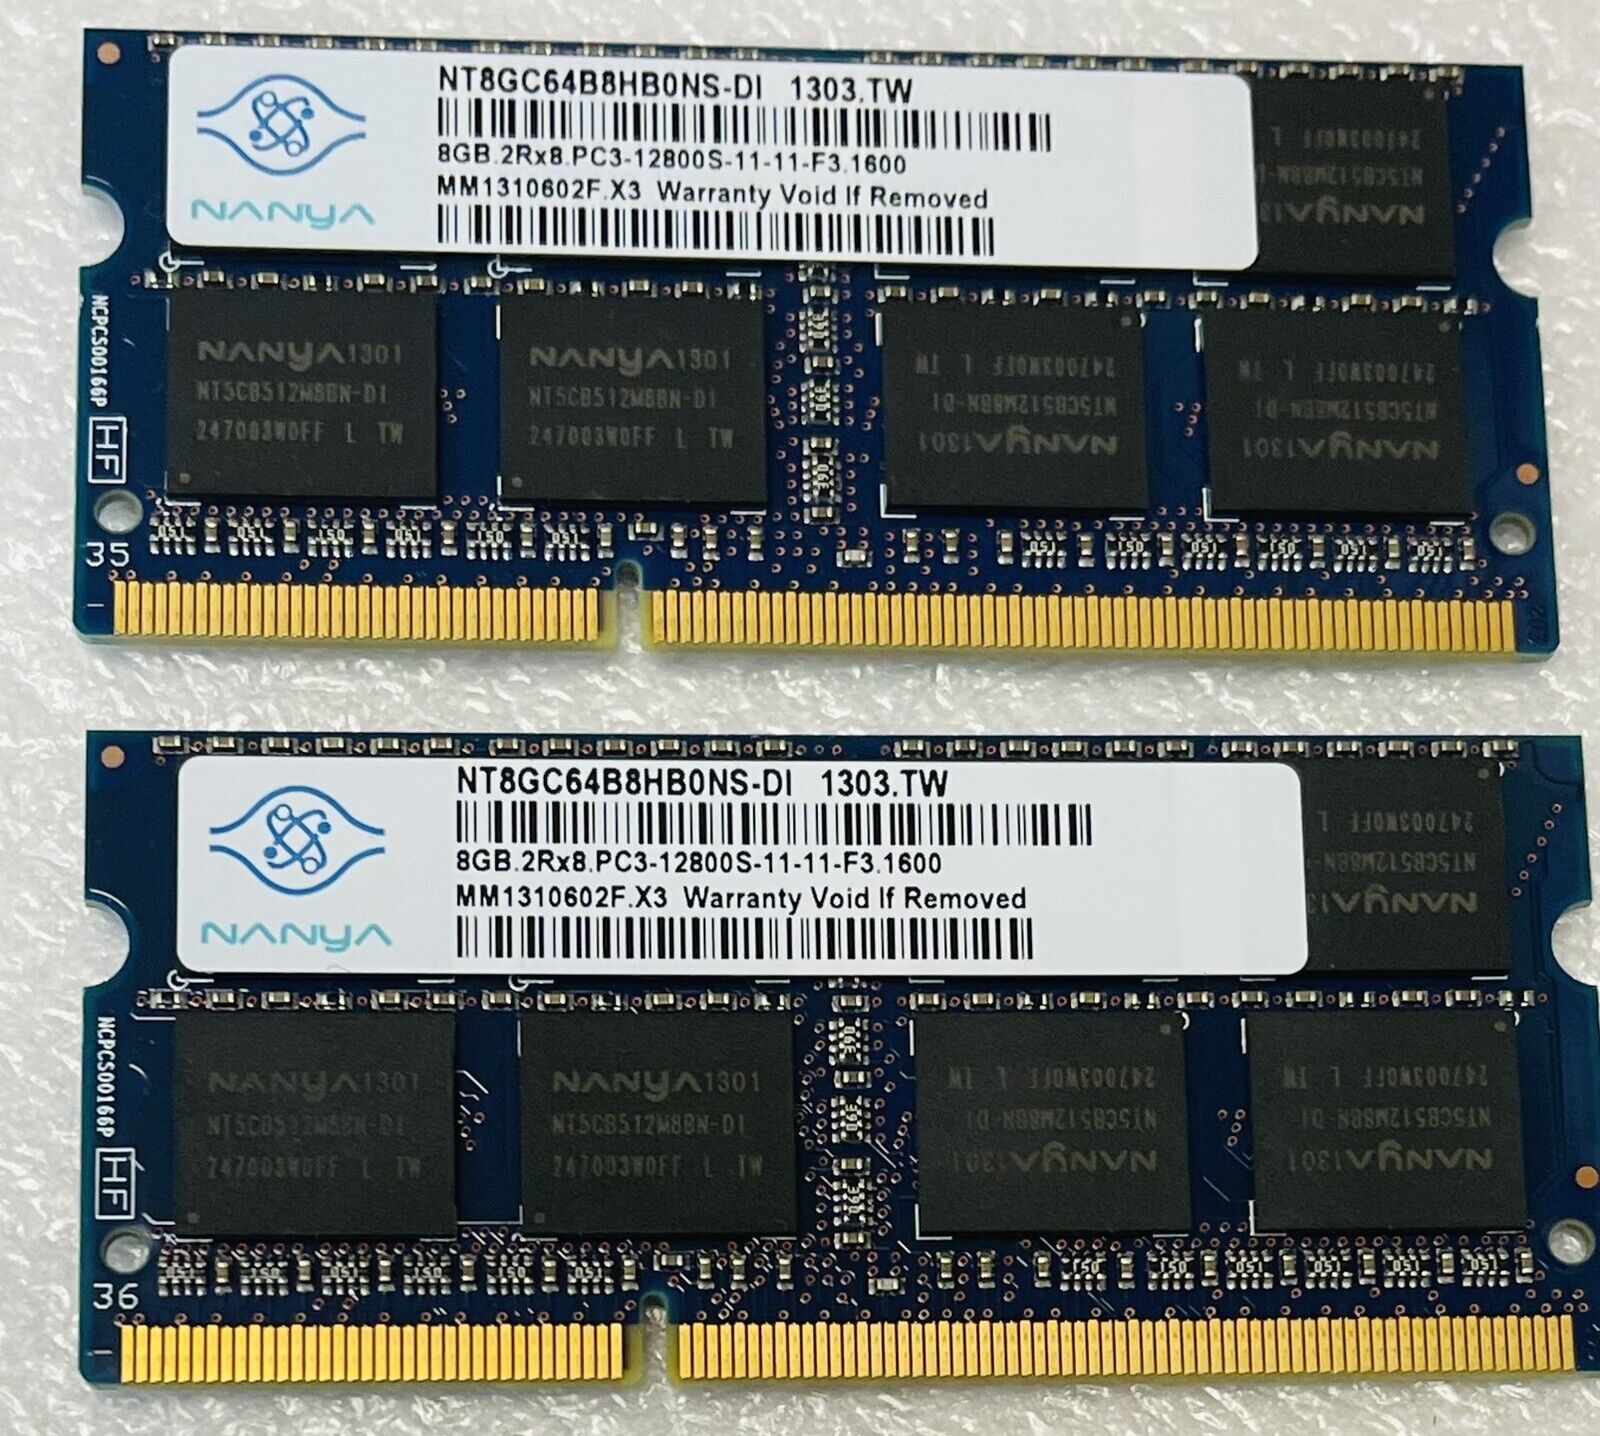 Nanya 16GB (2x 8GB) DDR3 PC3-12800s SODIMM NT8GC64B8HBONS-DI